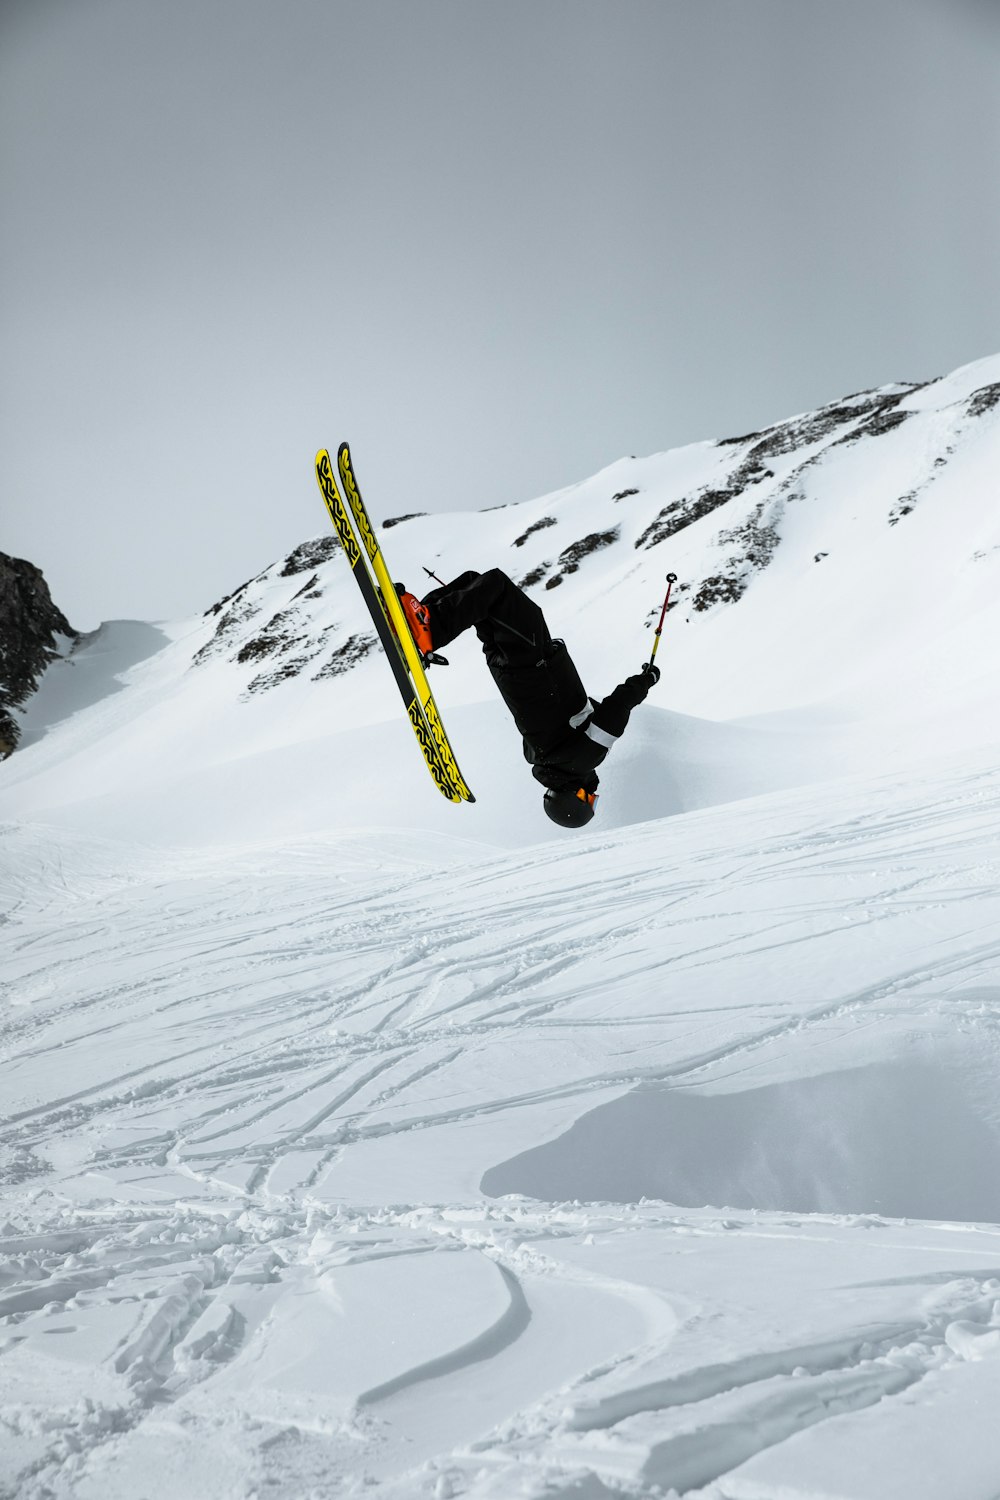 Mann in schwarzer Jacke und schwarzer Hose fährt tagsüber auf einem gelben Snowboard auf einem schneebedeckten Berg